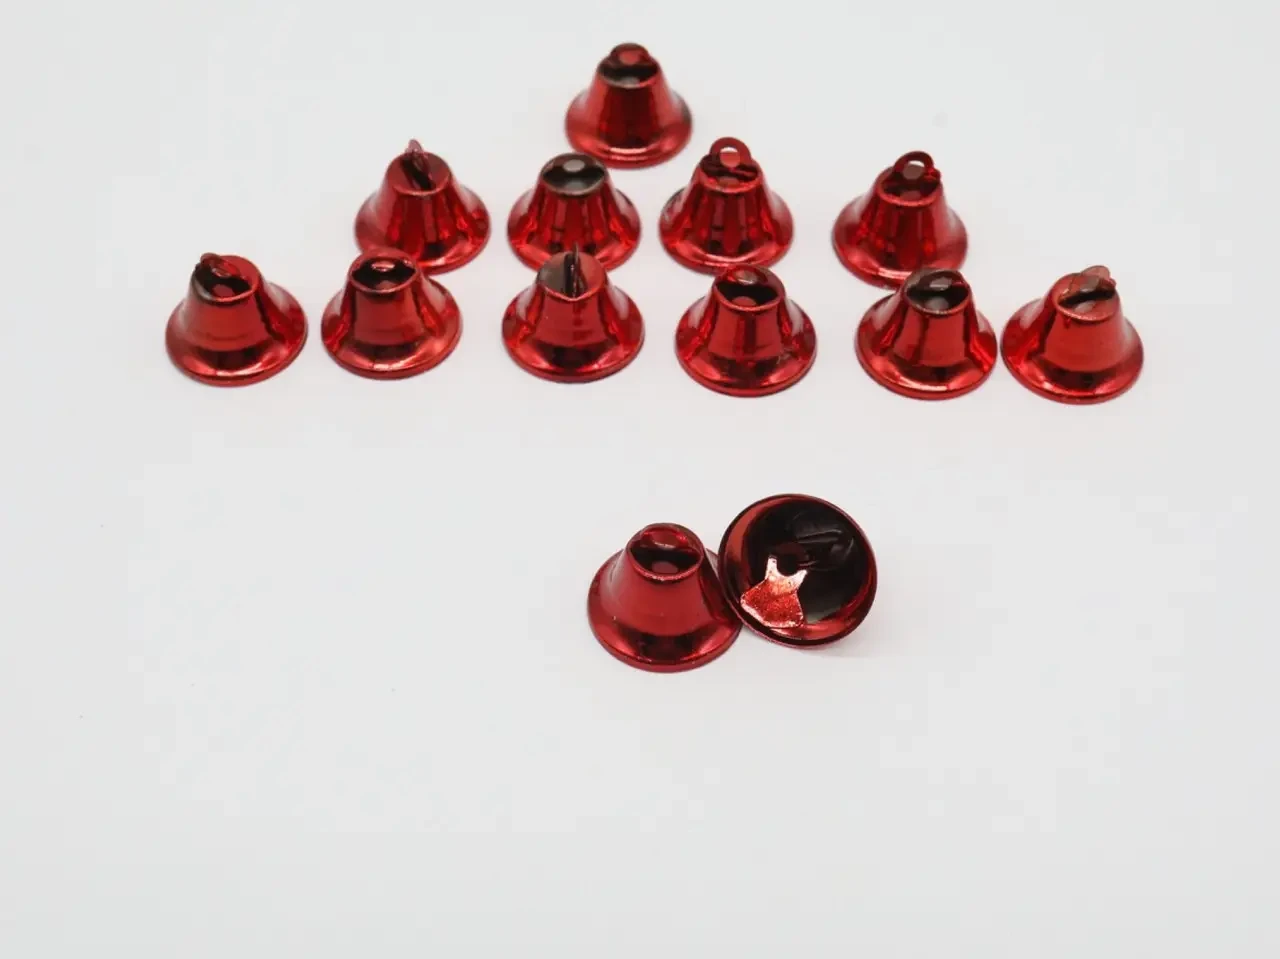 Червоні металеві дзвіночки для прикрашання одягу, декору та сувенірів розміром 22 мм